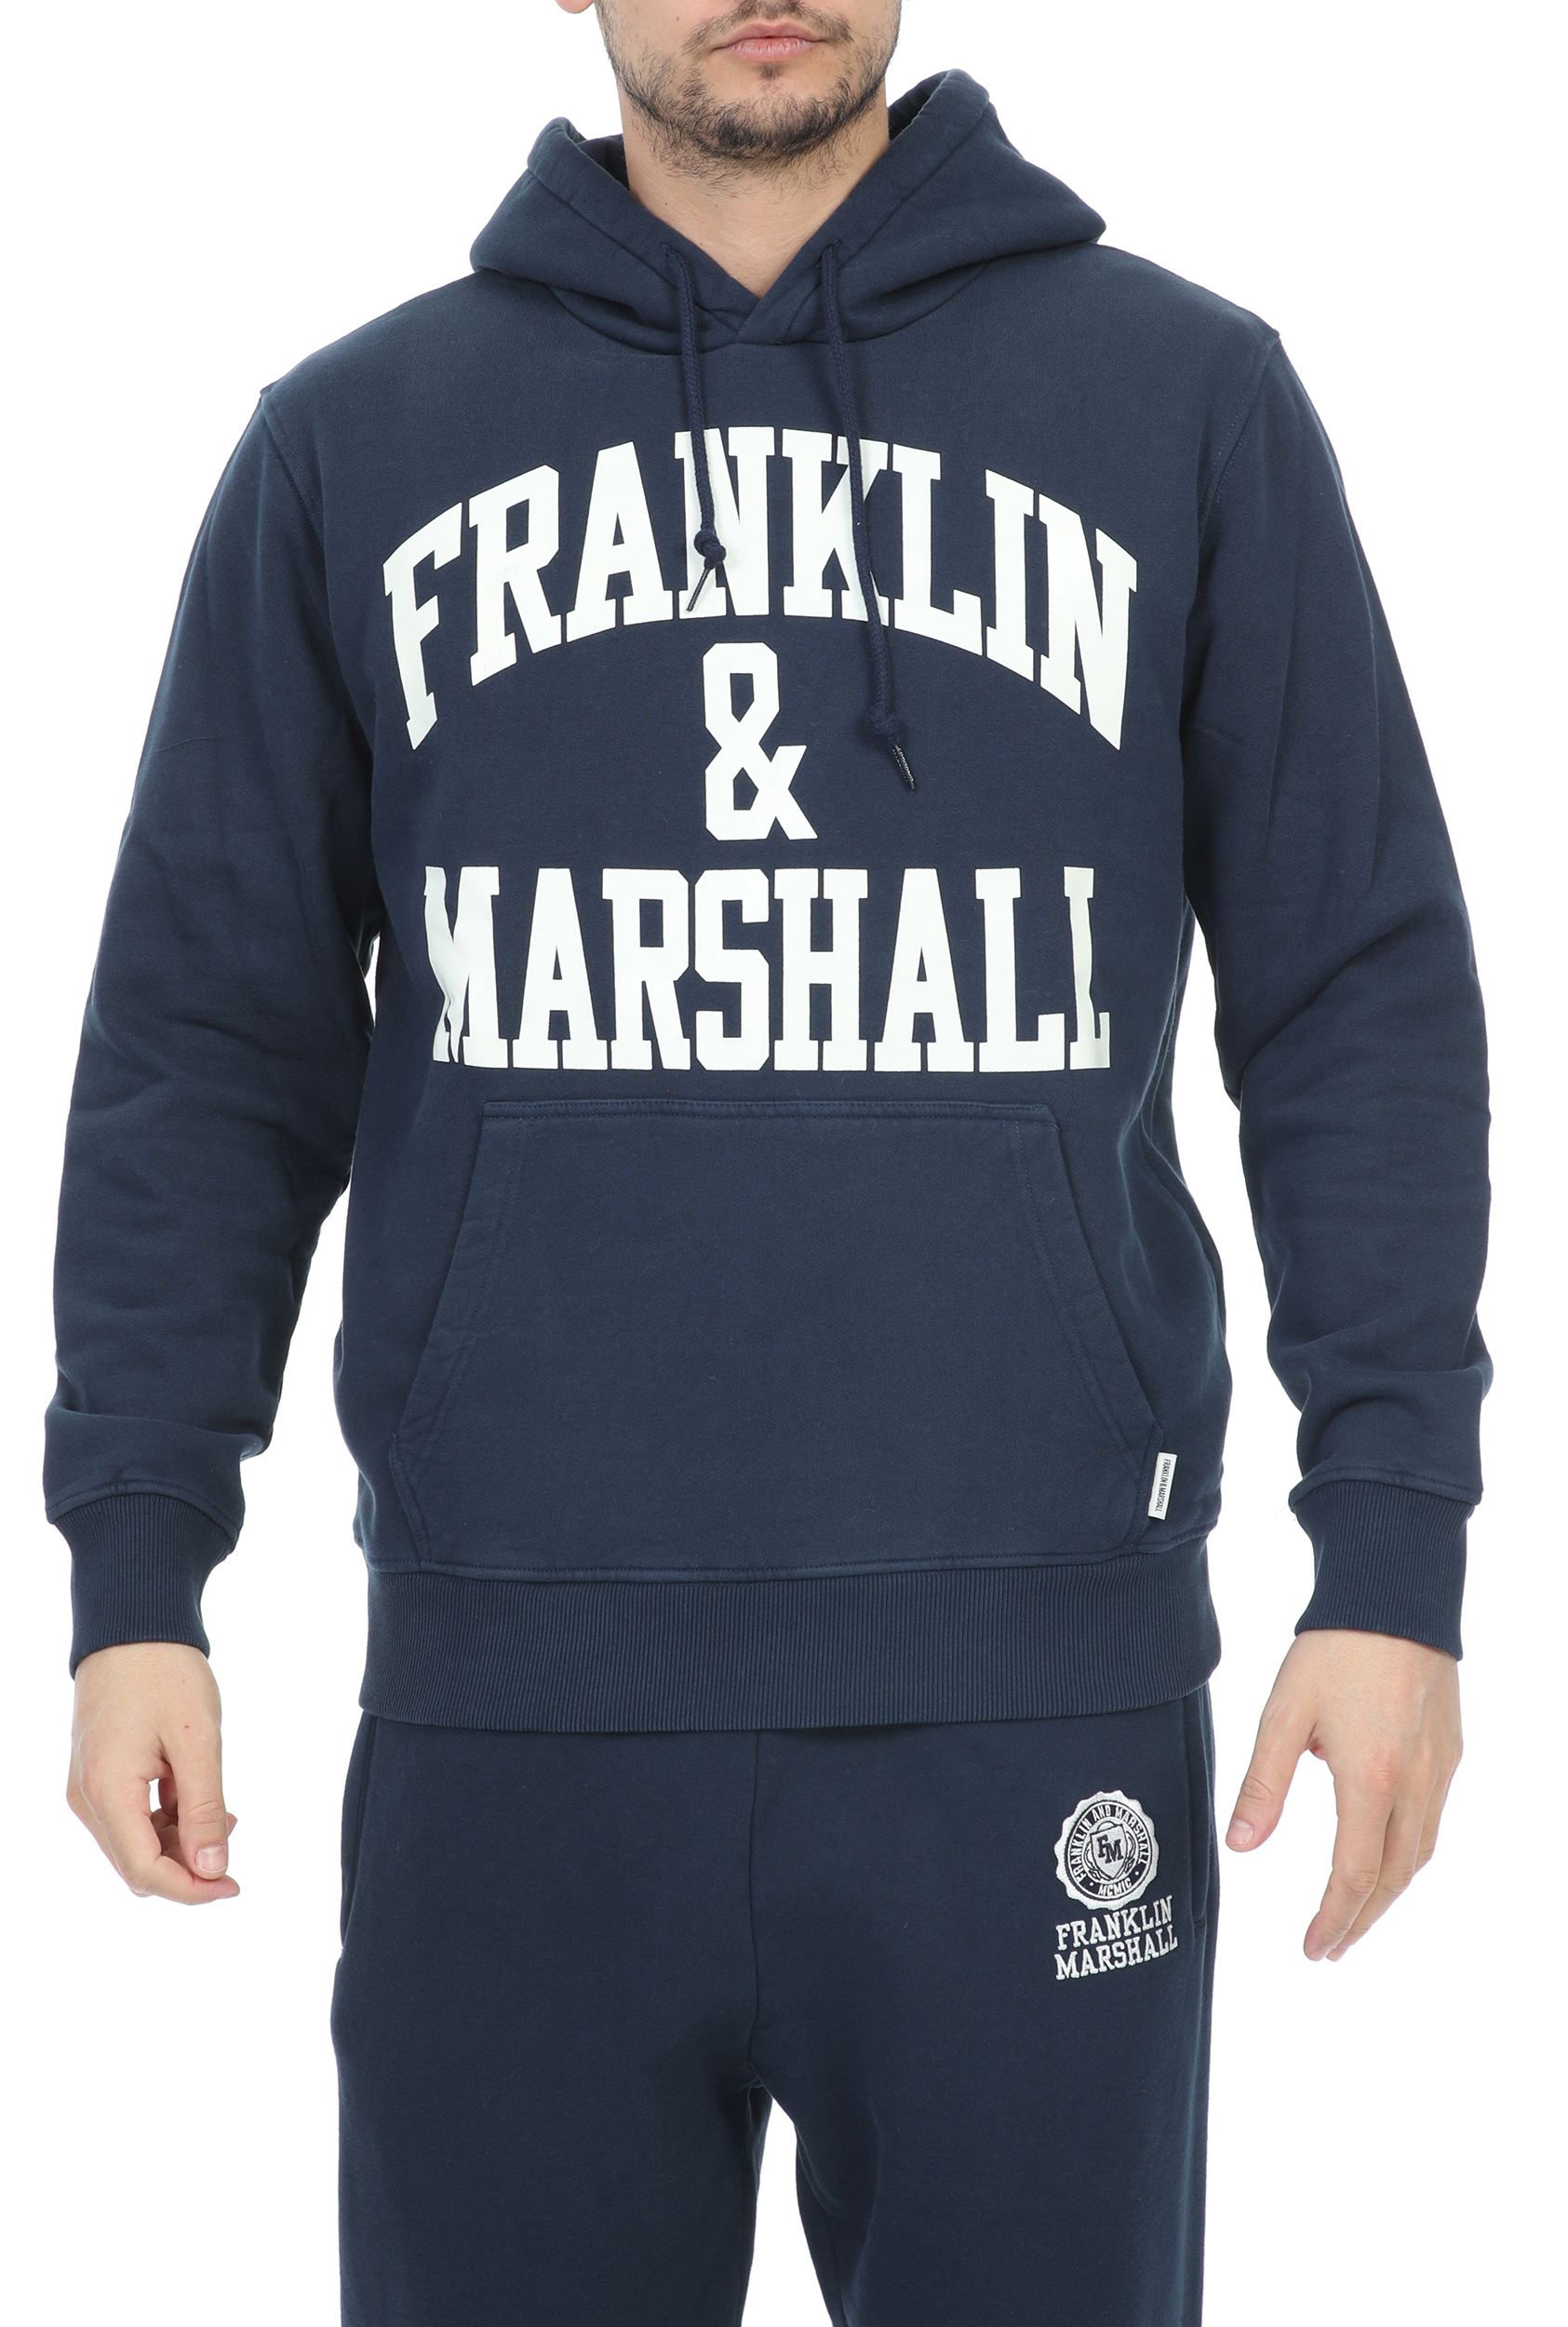 FRANKLIN & MARSHALL – Ανδρική φούτερ μπλούζα FRANKLIN & MARSHALL BRUSHED COTTON FLEE μπλε 1799475.0-001E